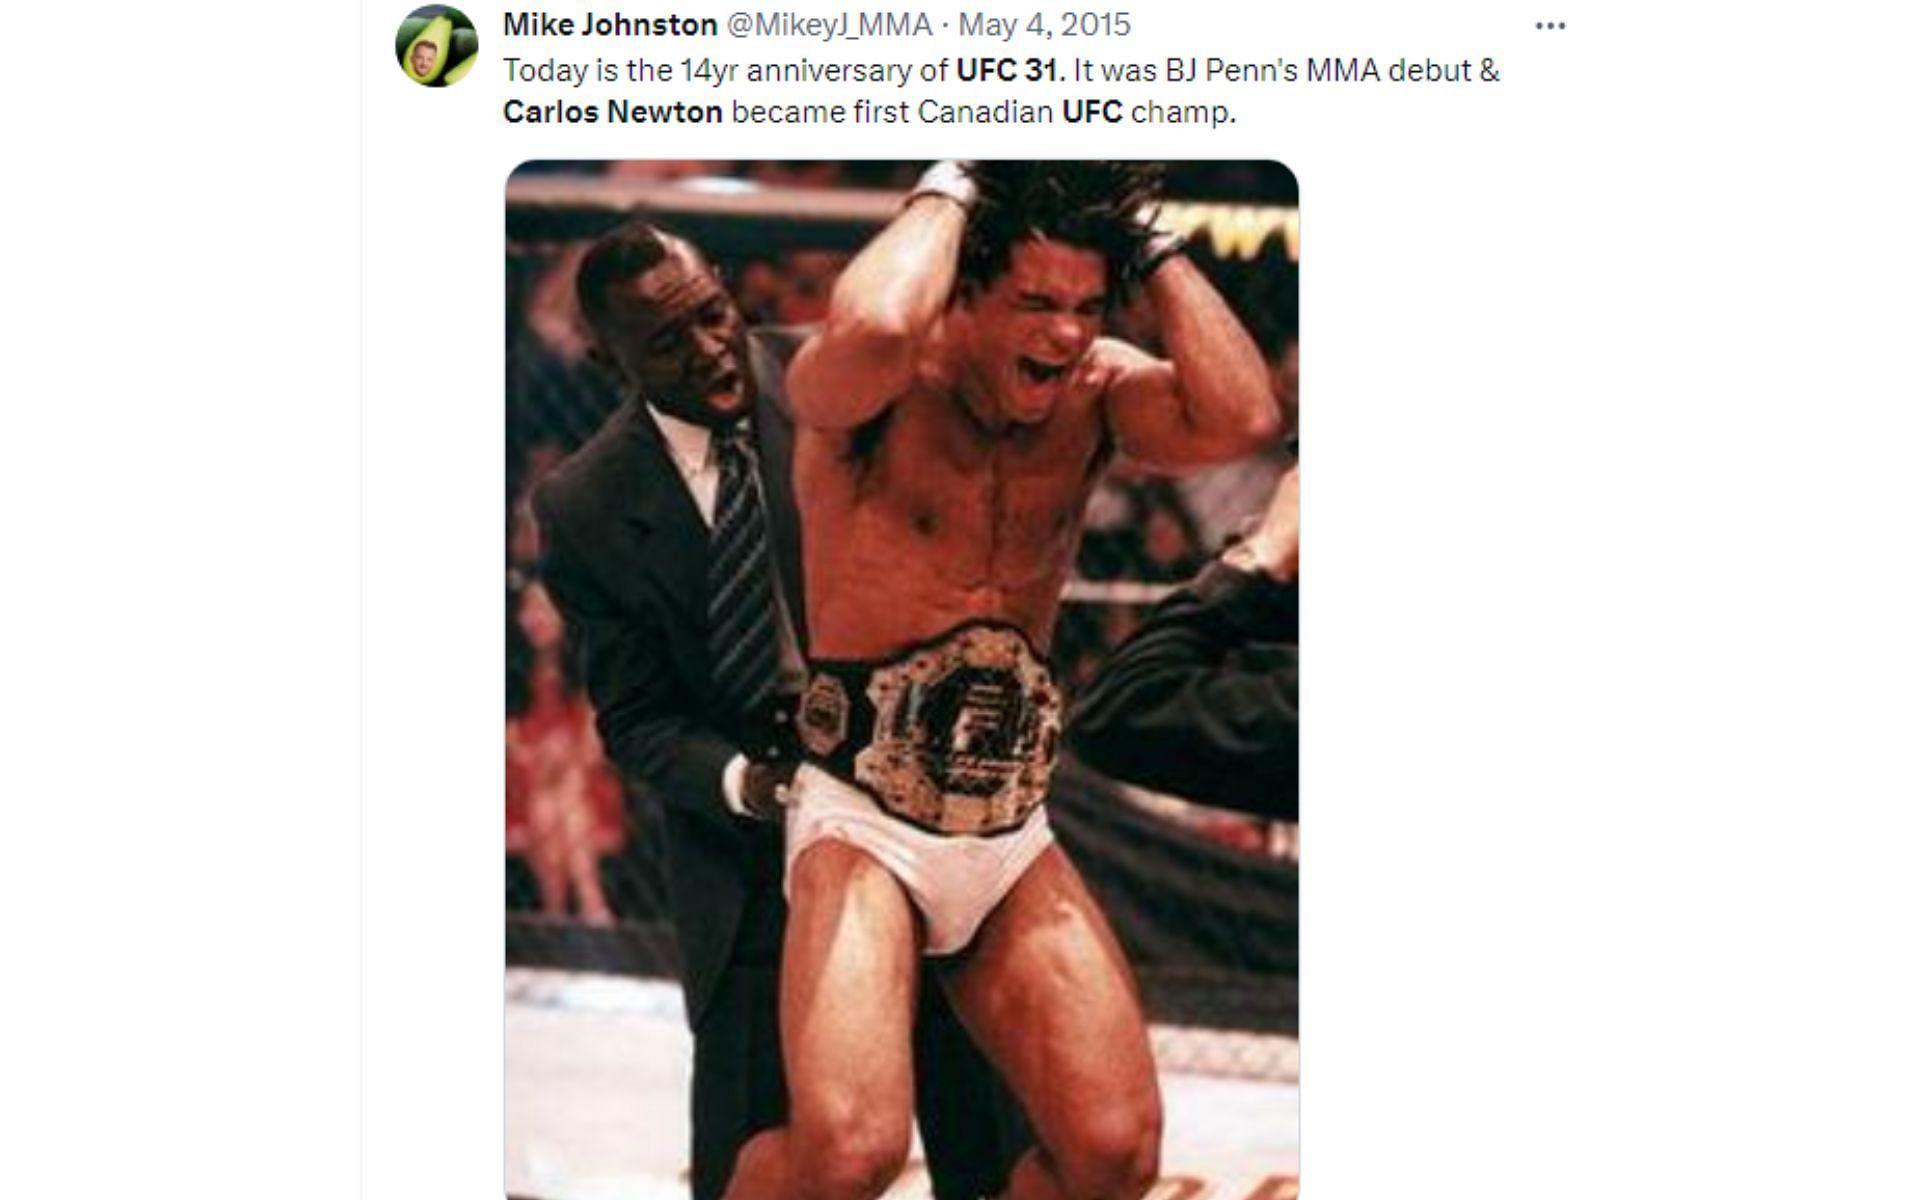 Tweet regarding UFC 31